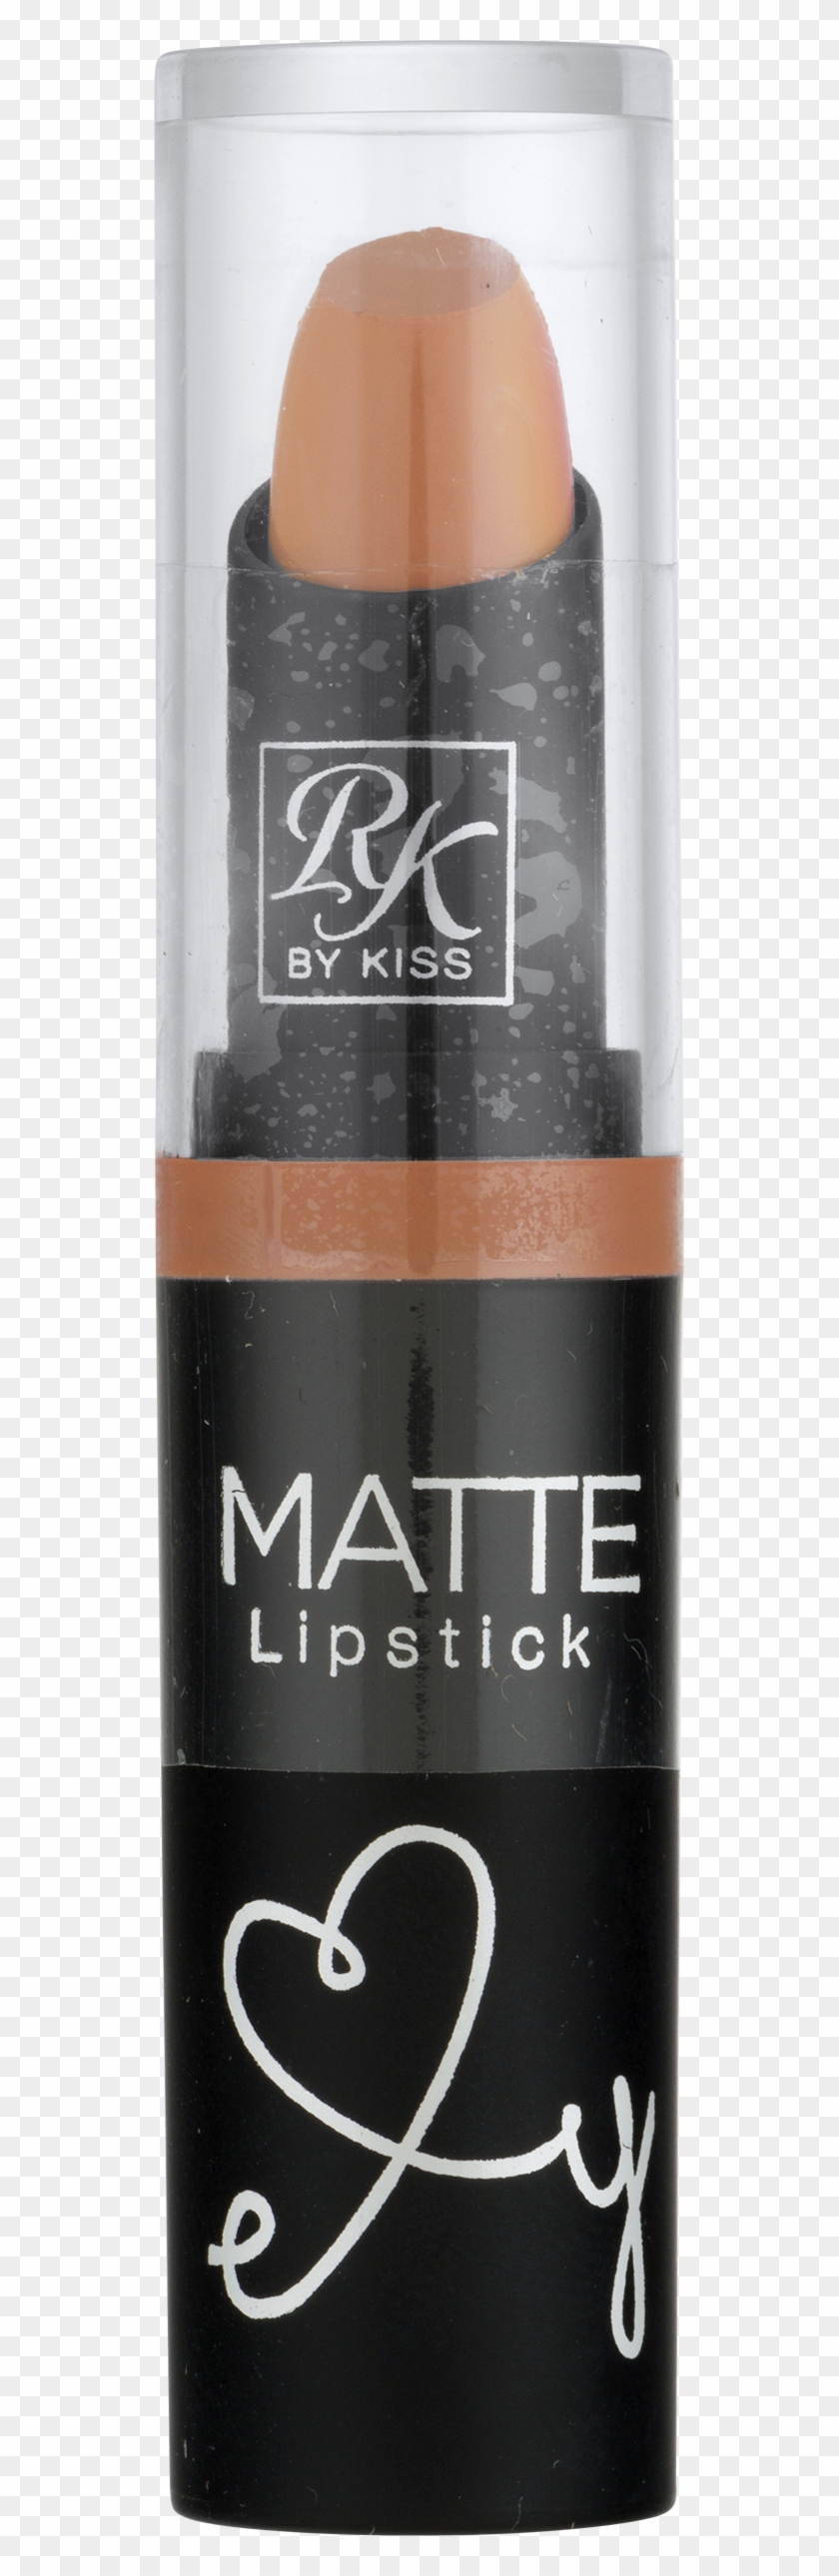 Kiss Ruby Kisses Matte Lipstick Clipart #1141010